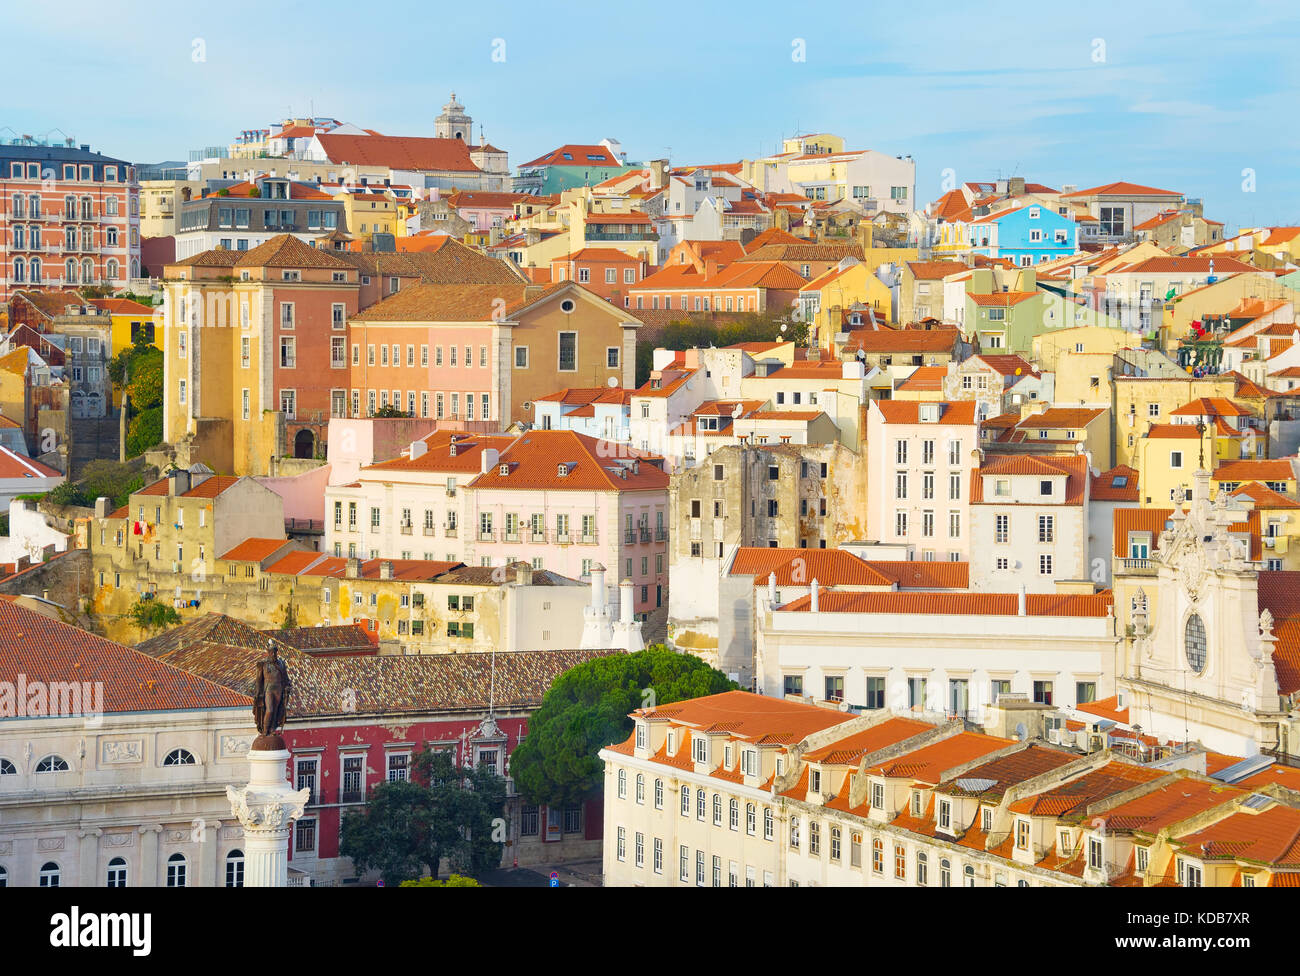 Vista de la vieja ciudad de Lisboa con el monumento del rey Pedro IV de Portugal. Foto de stock